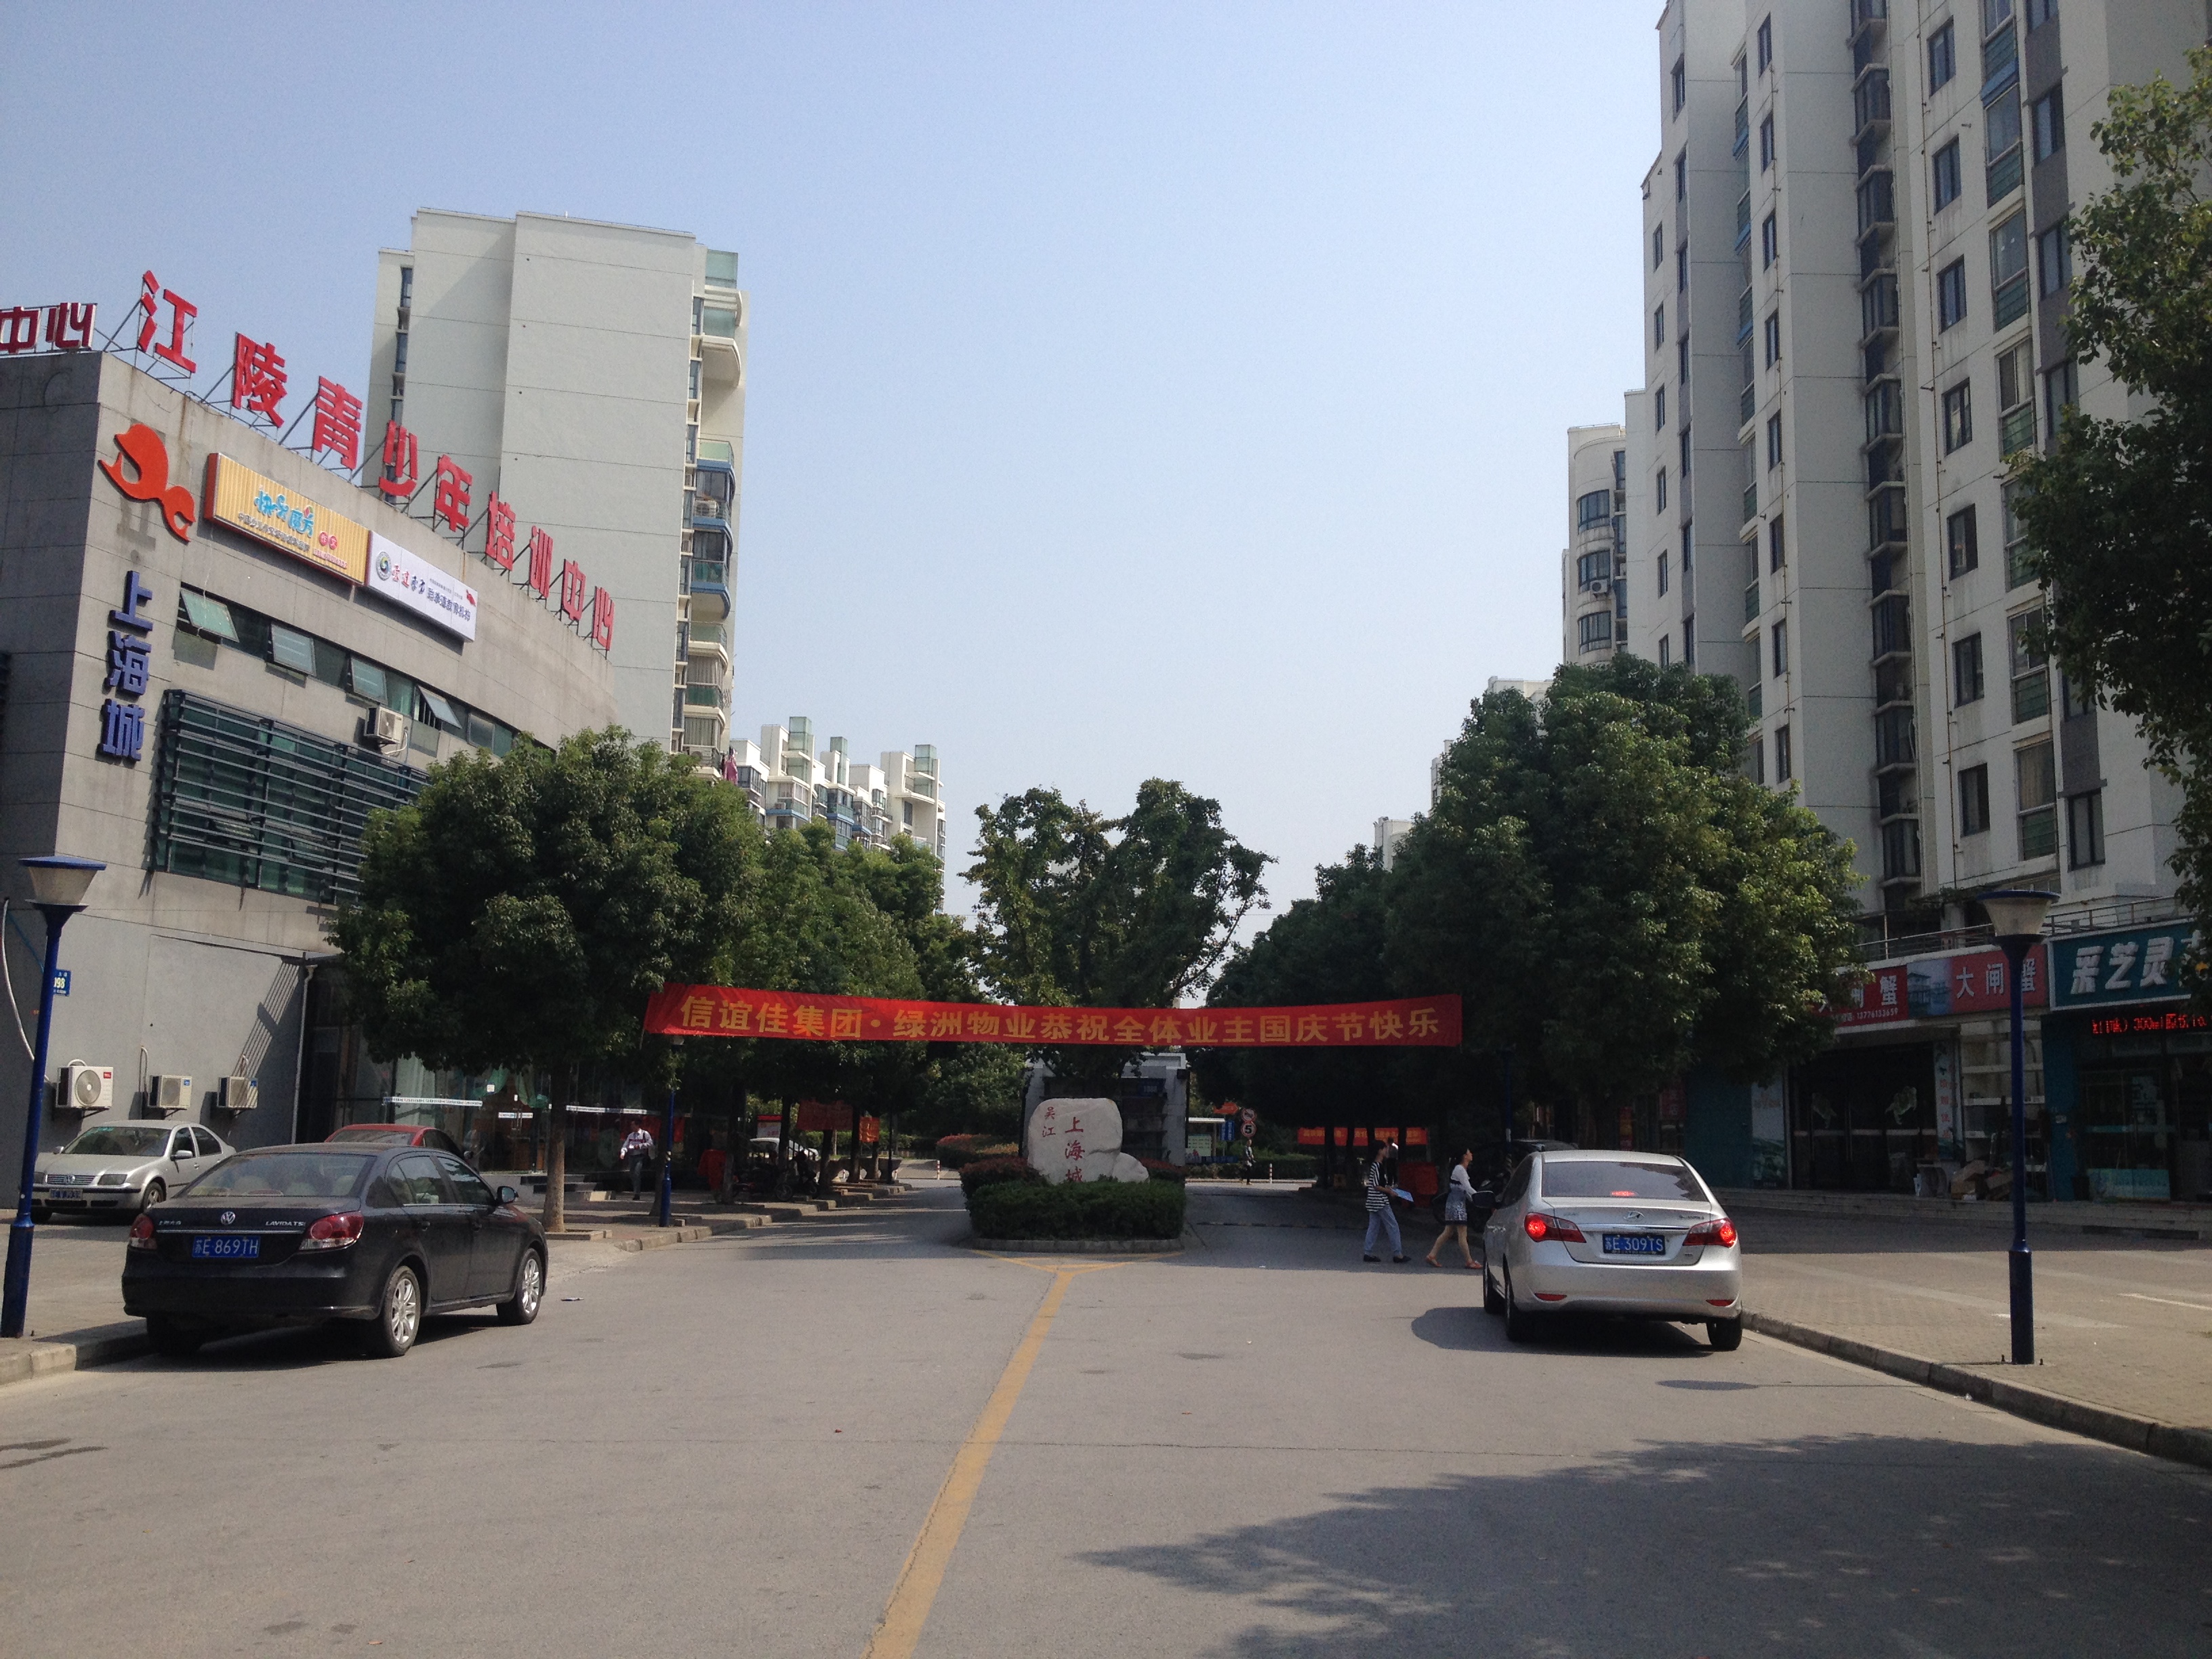 上海城 3室2厅2卫 130平方米 205万出售